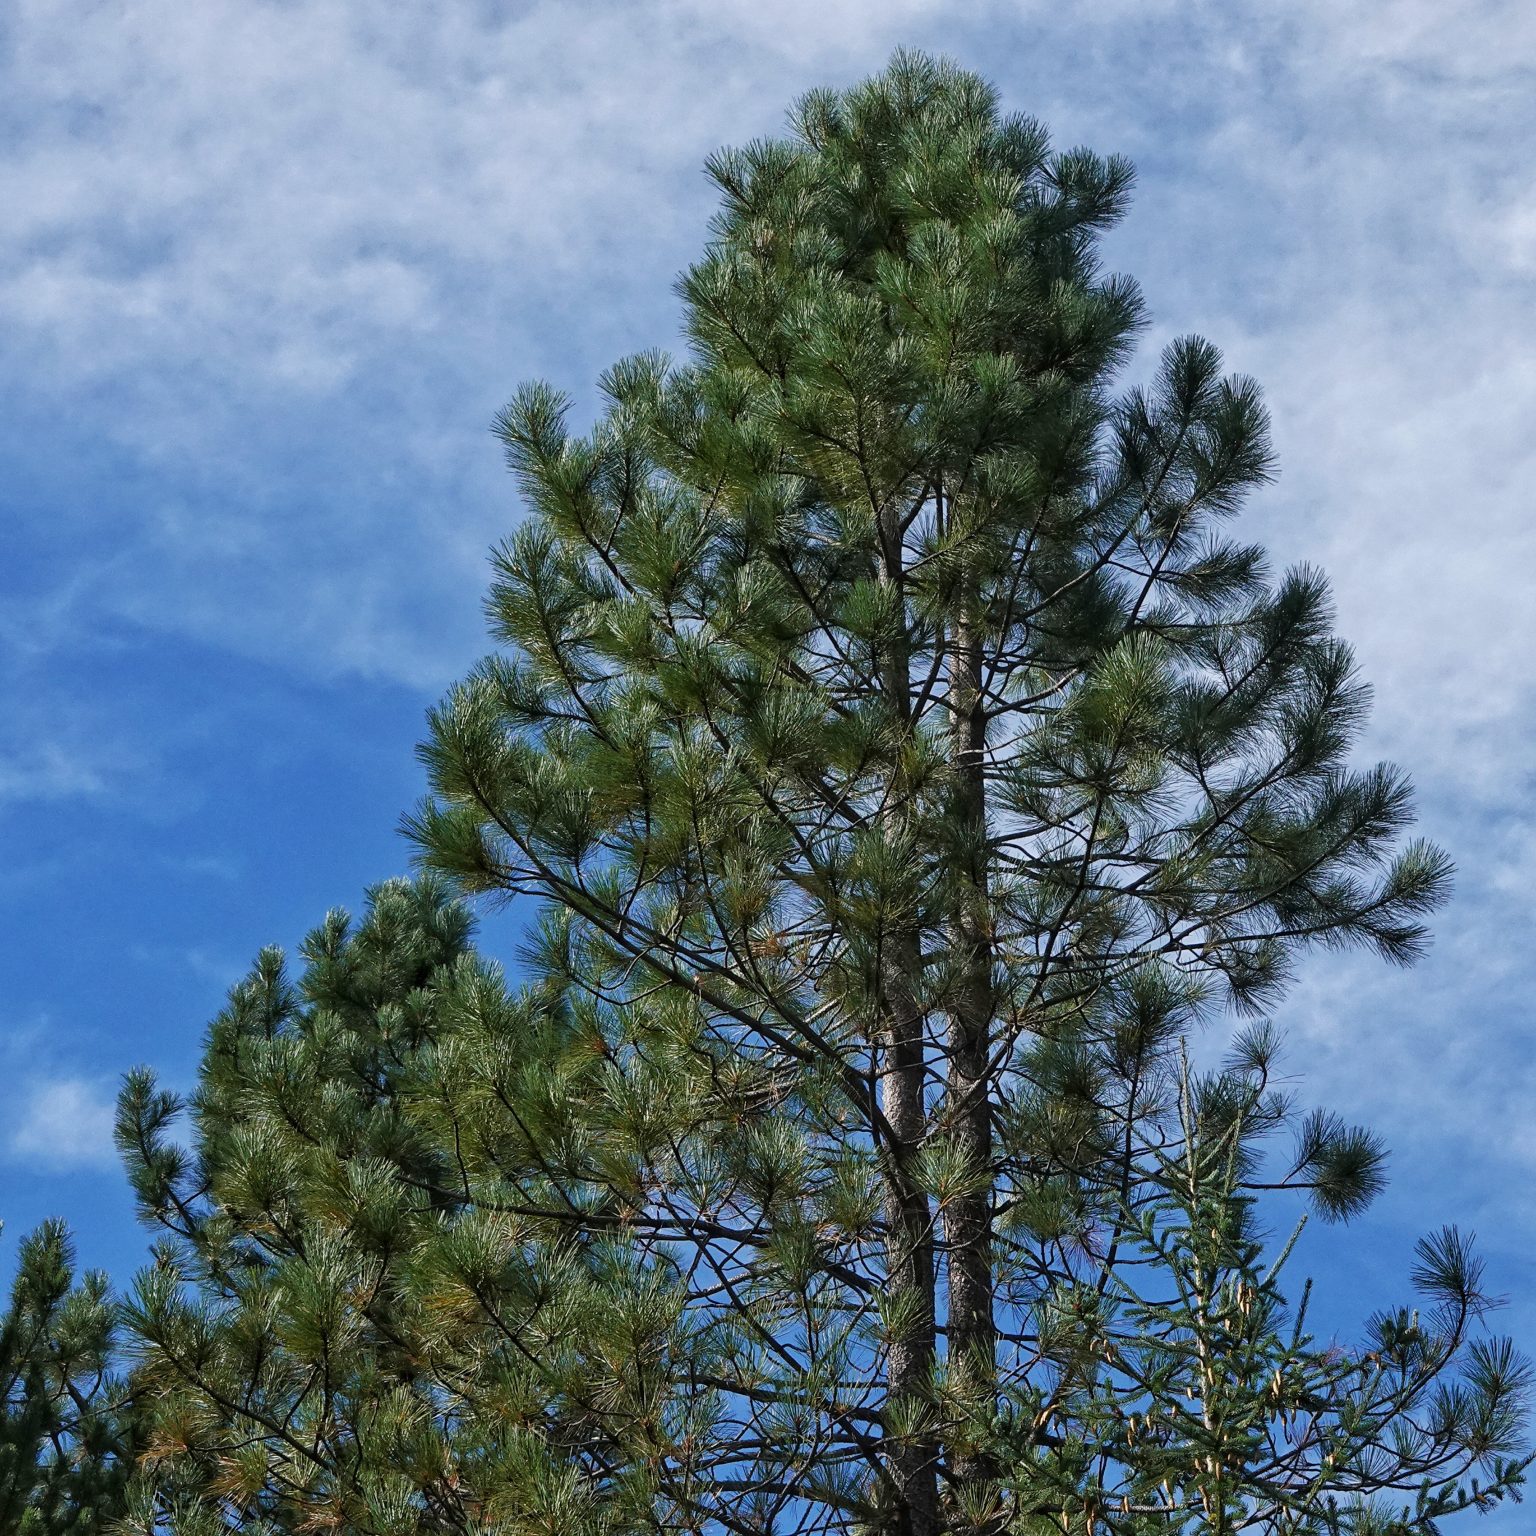 Ponderosa Pine